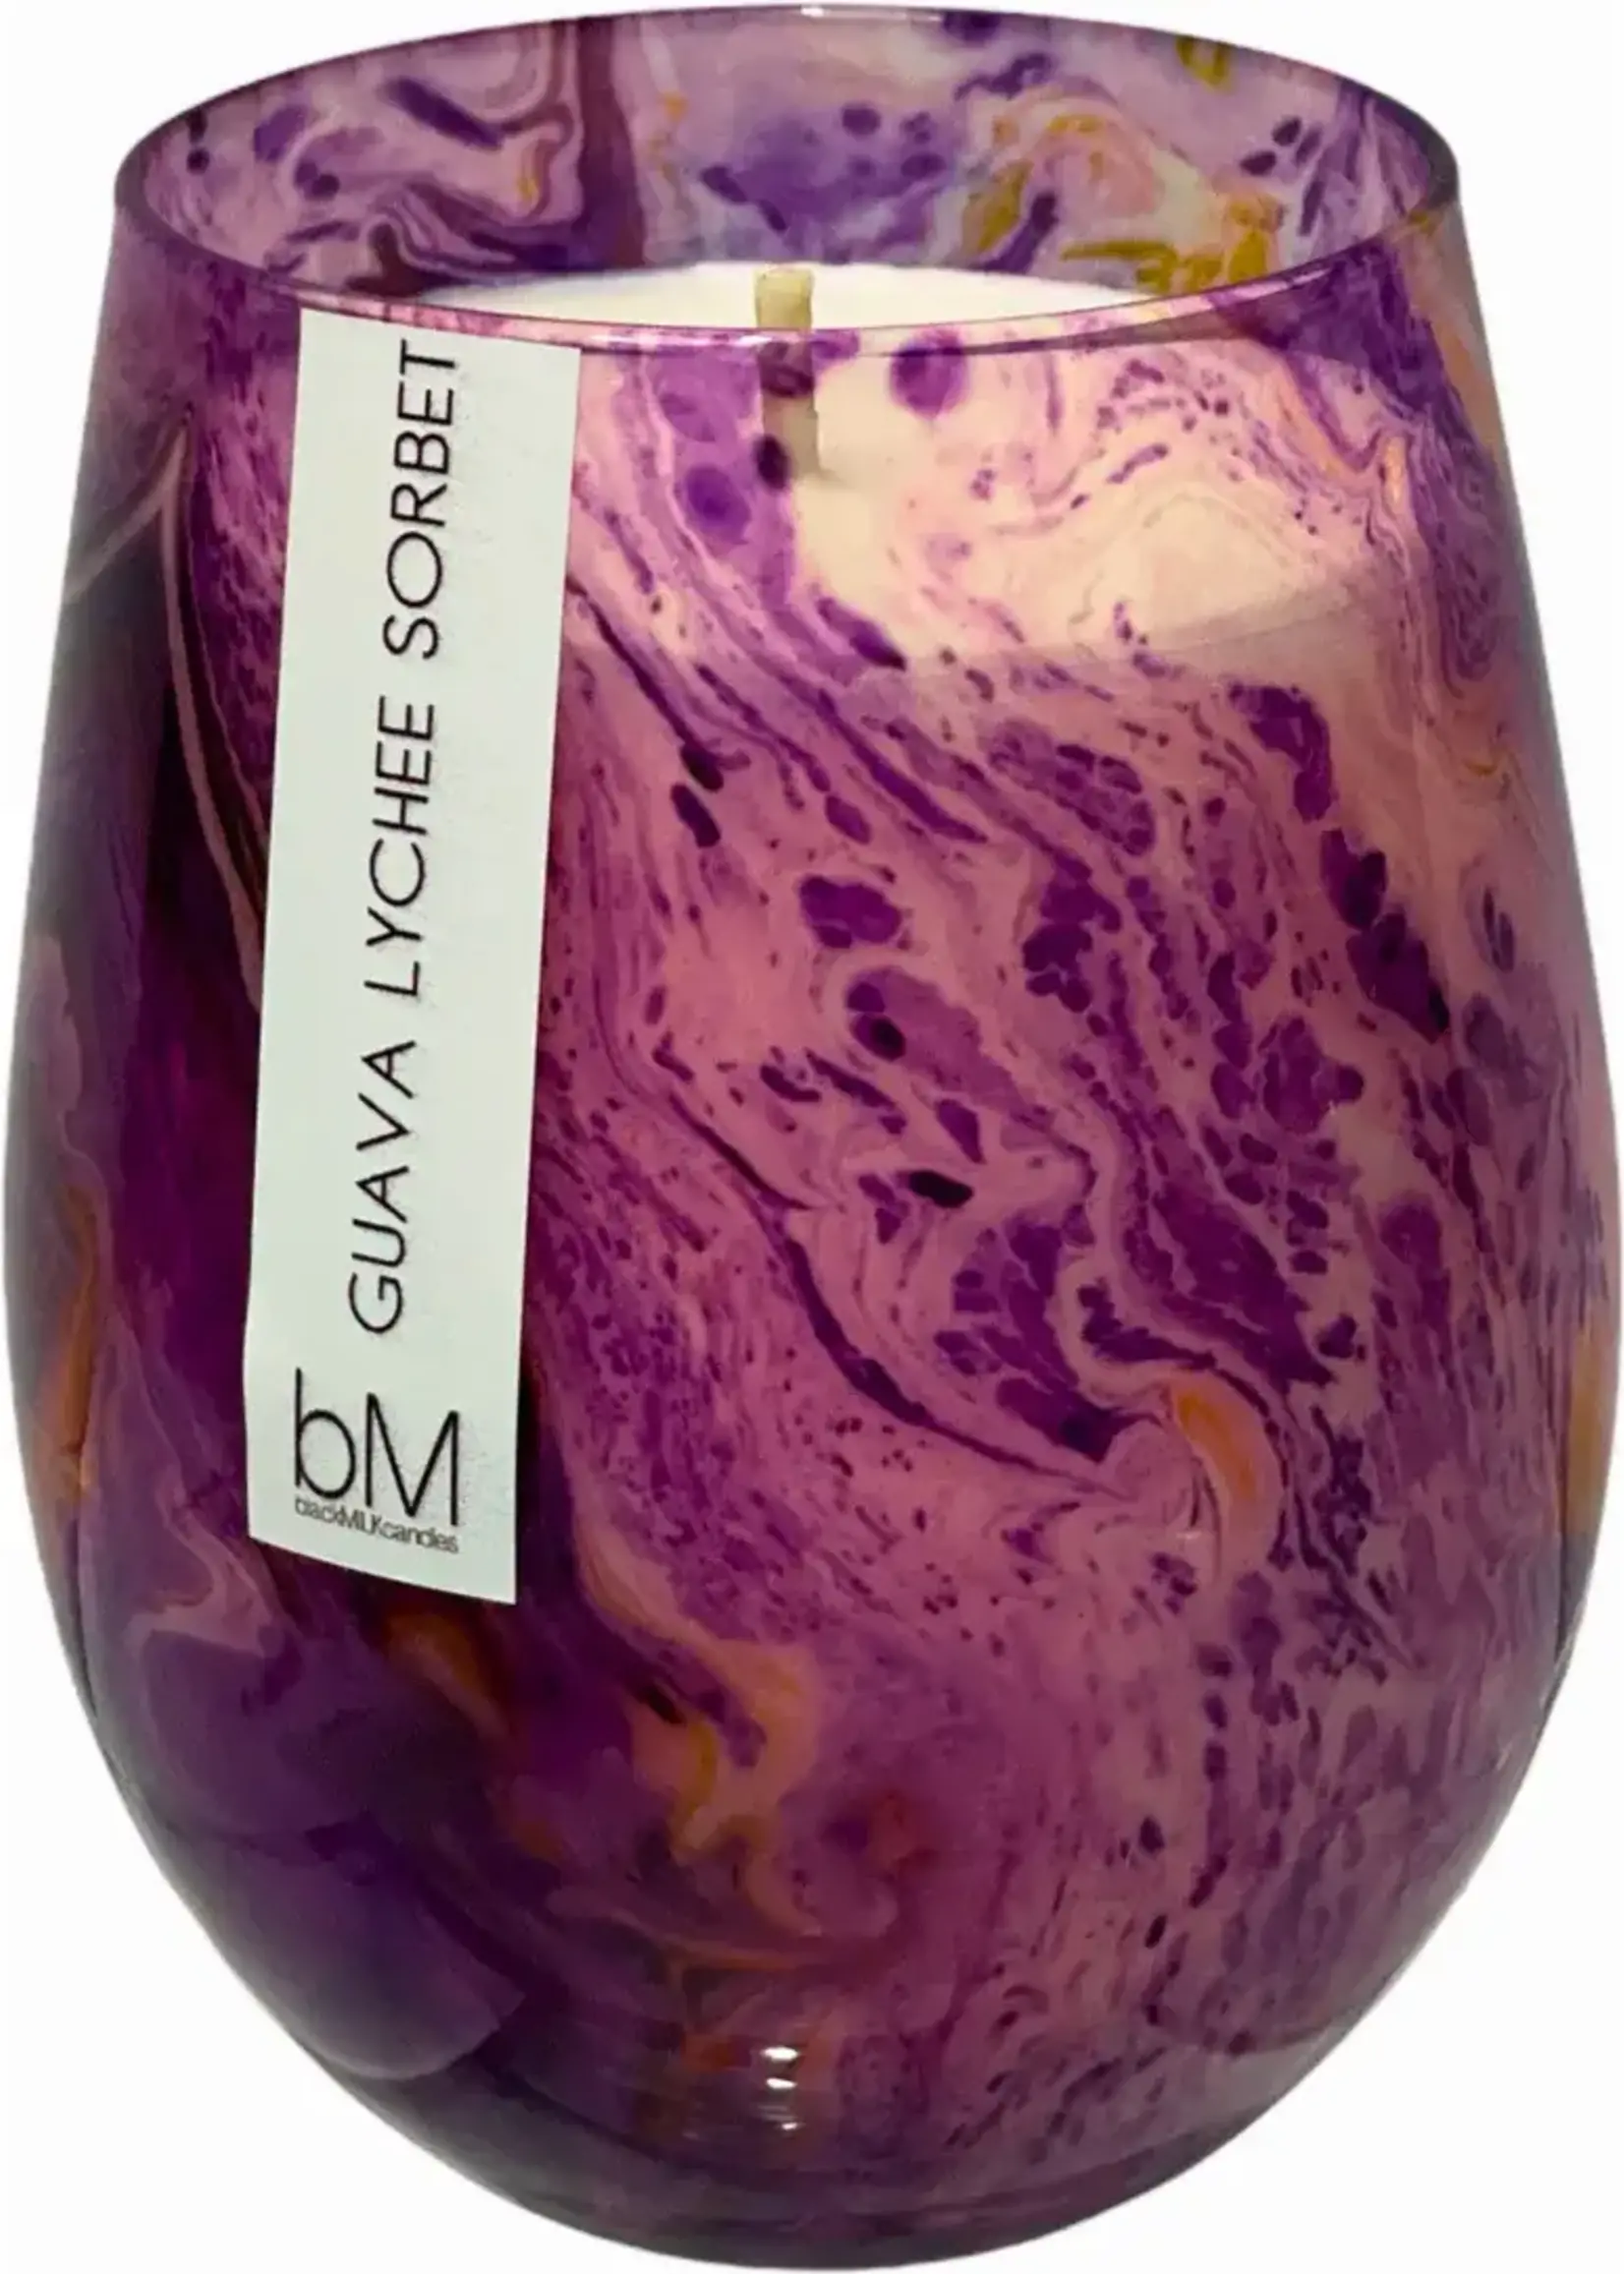 Blackmilk Galaxy Venus - Guava Lychee Sorbet